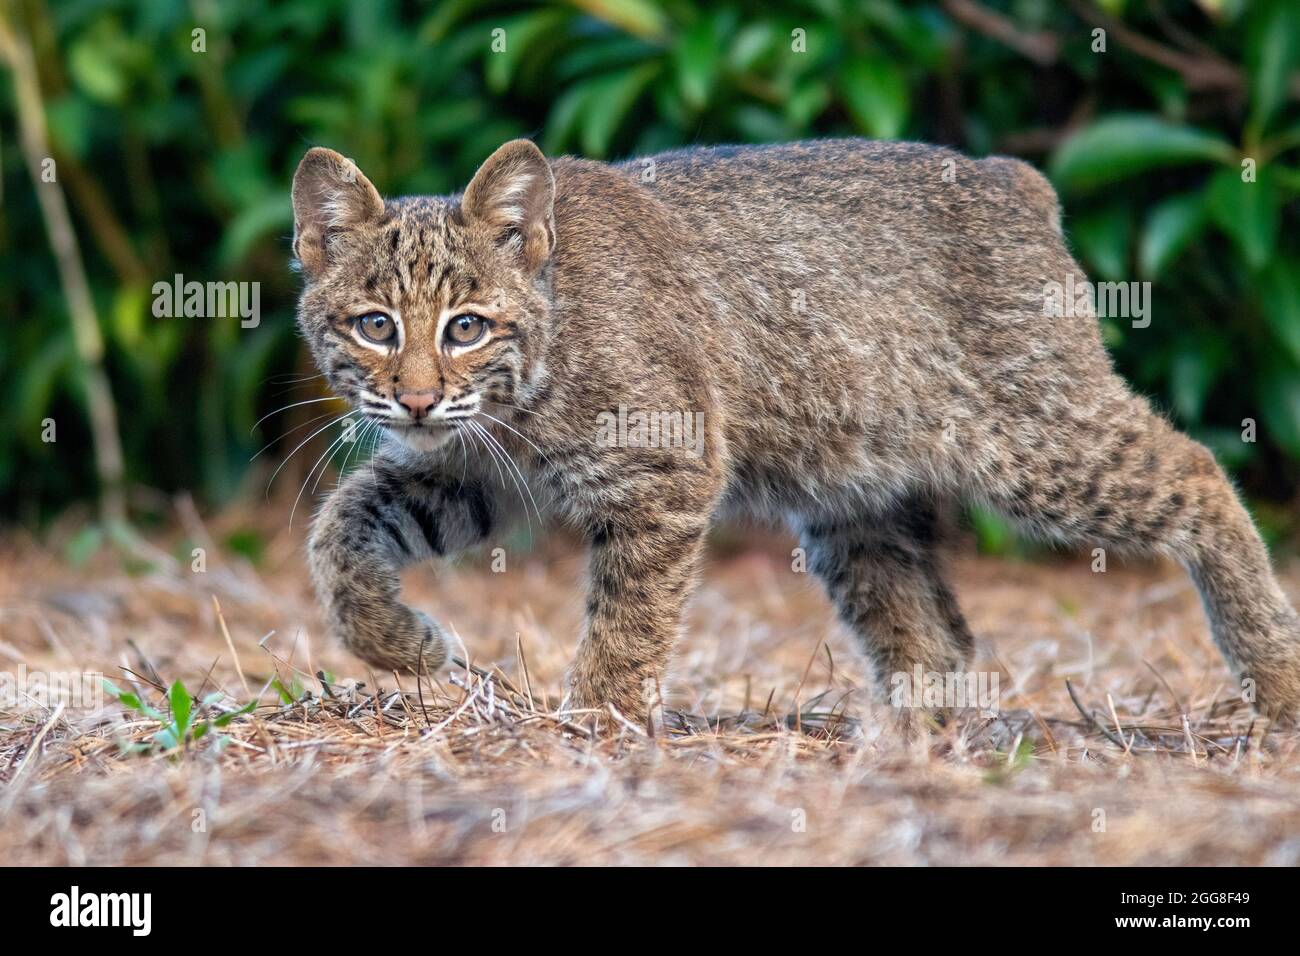 Chaton sauvage de Bobcat (Lynx rufus) - Brevard, Caroline du Nord, États-Unis Banque D'Images